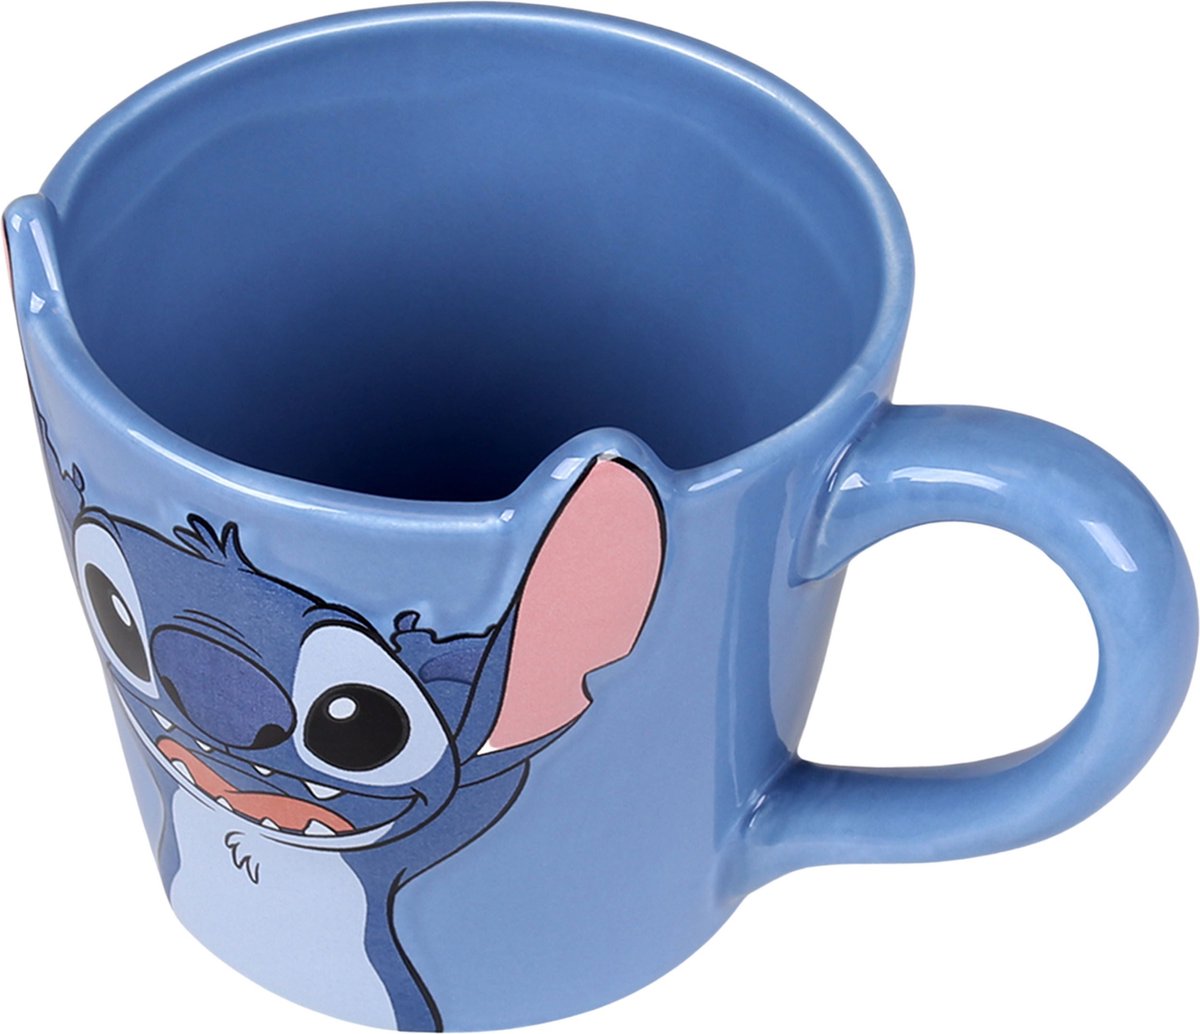 Maxi Tasse Stitch Disney en Céramique sur Cadeaux et Anniversaire